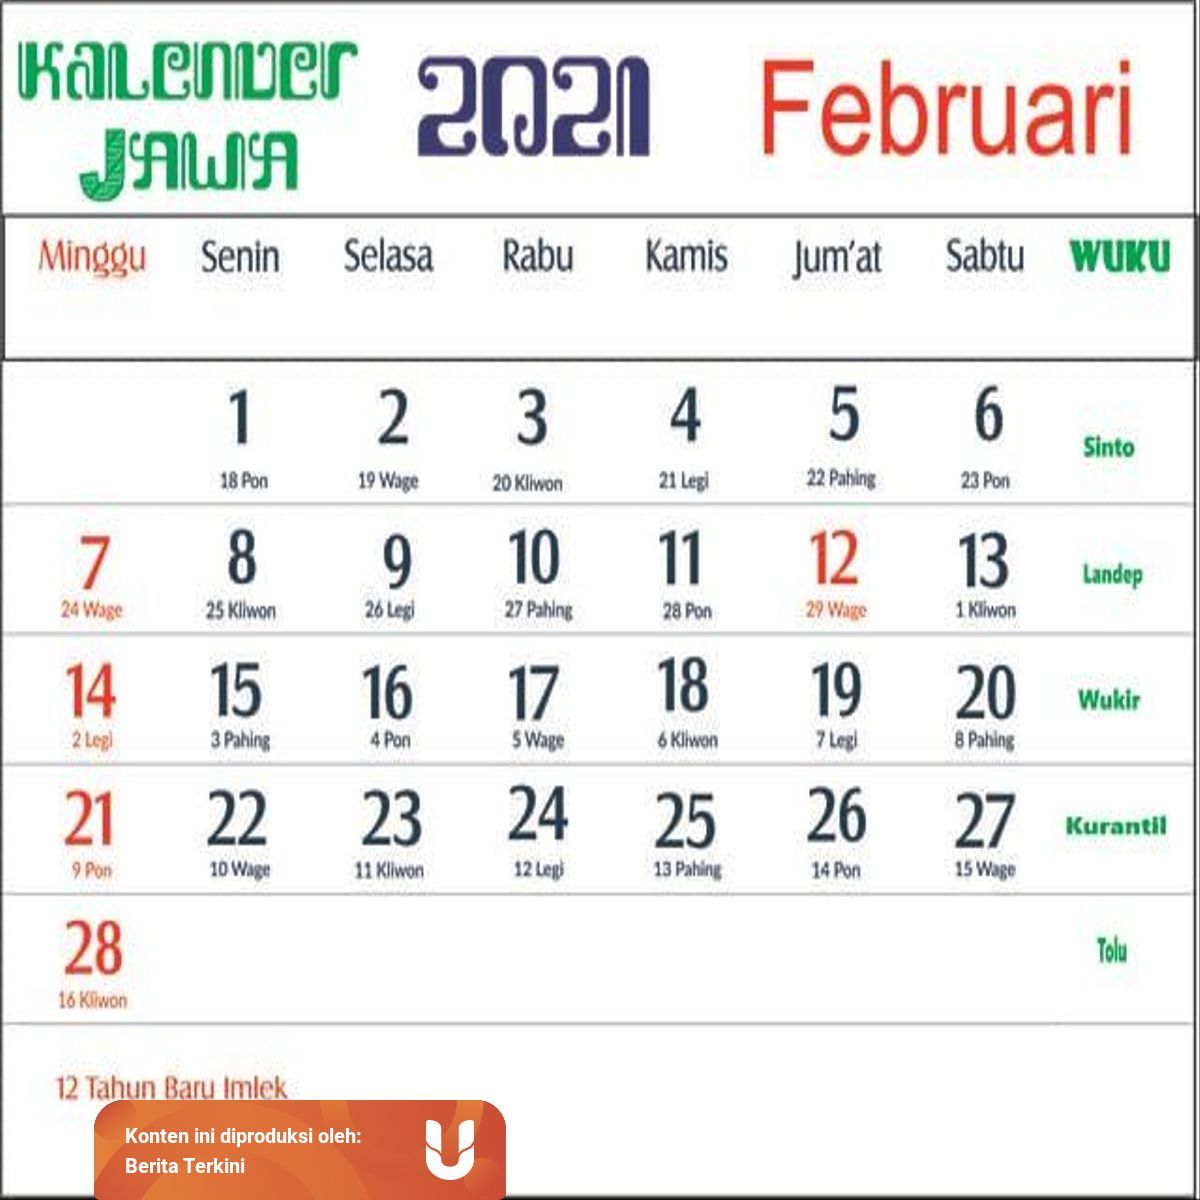 Kalender Jawa Februari 1986